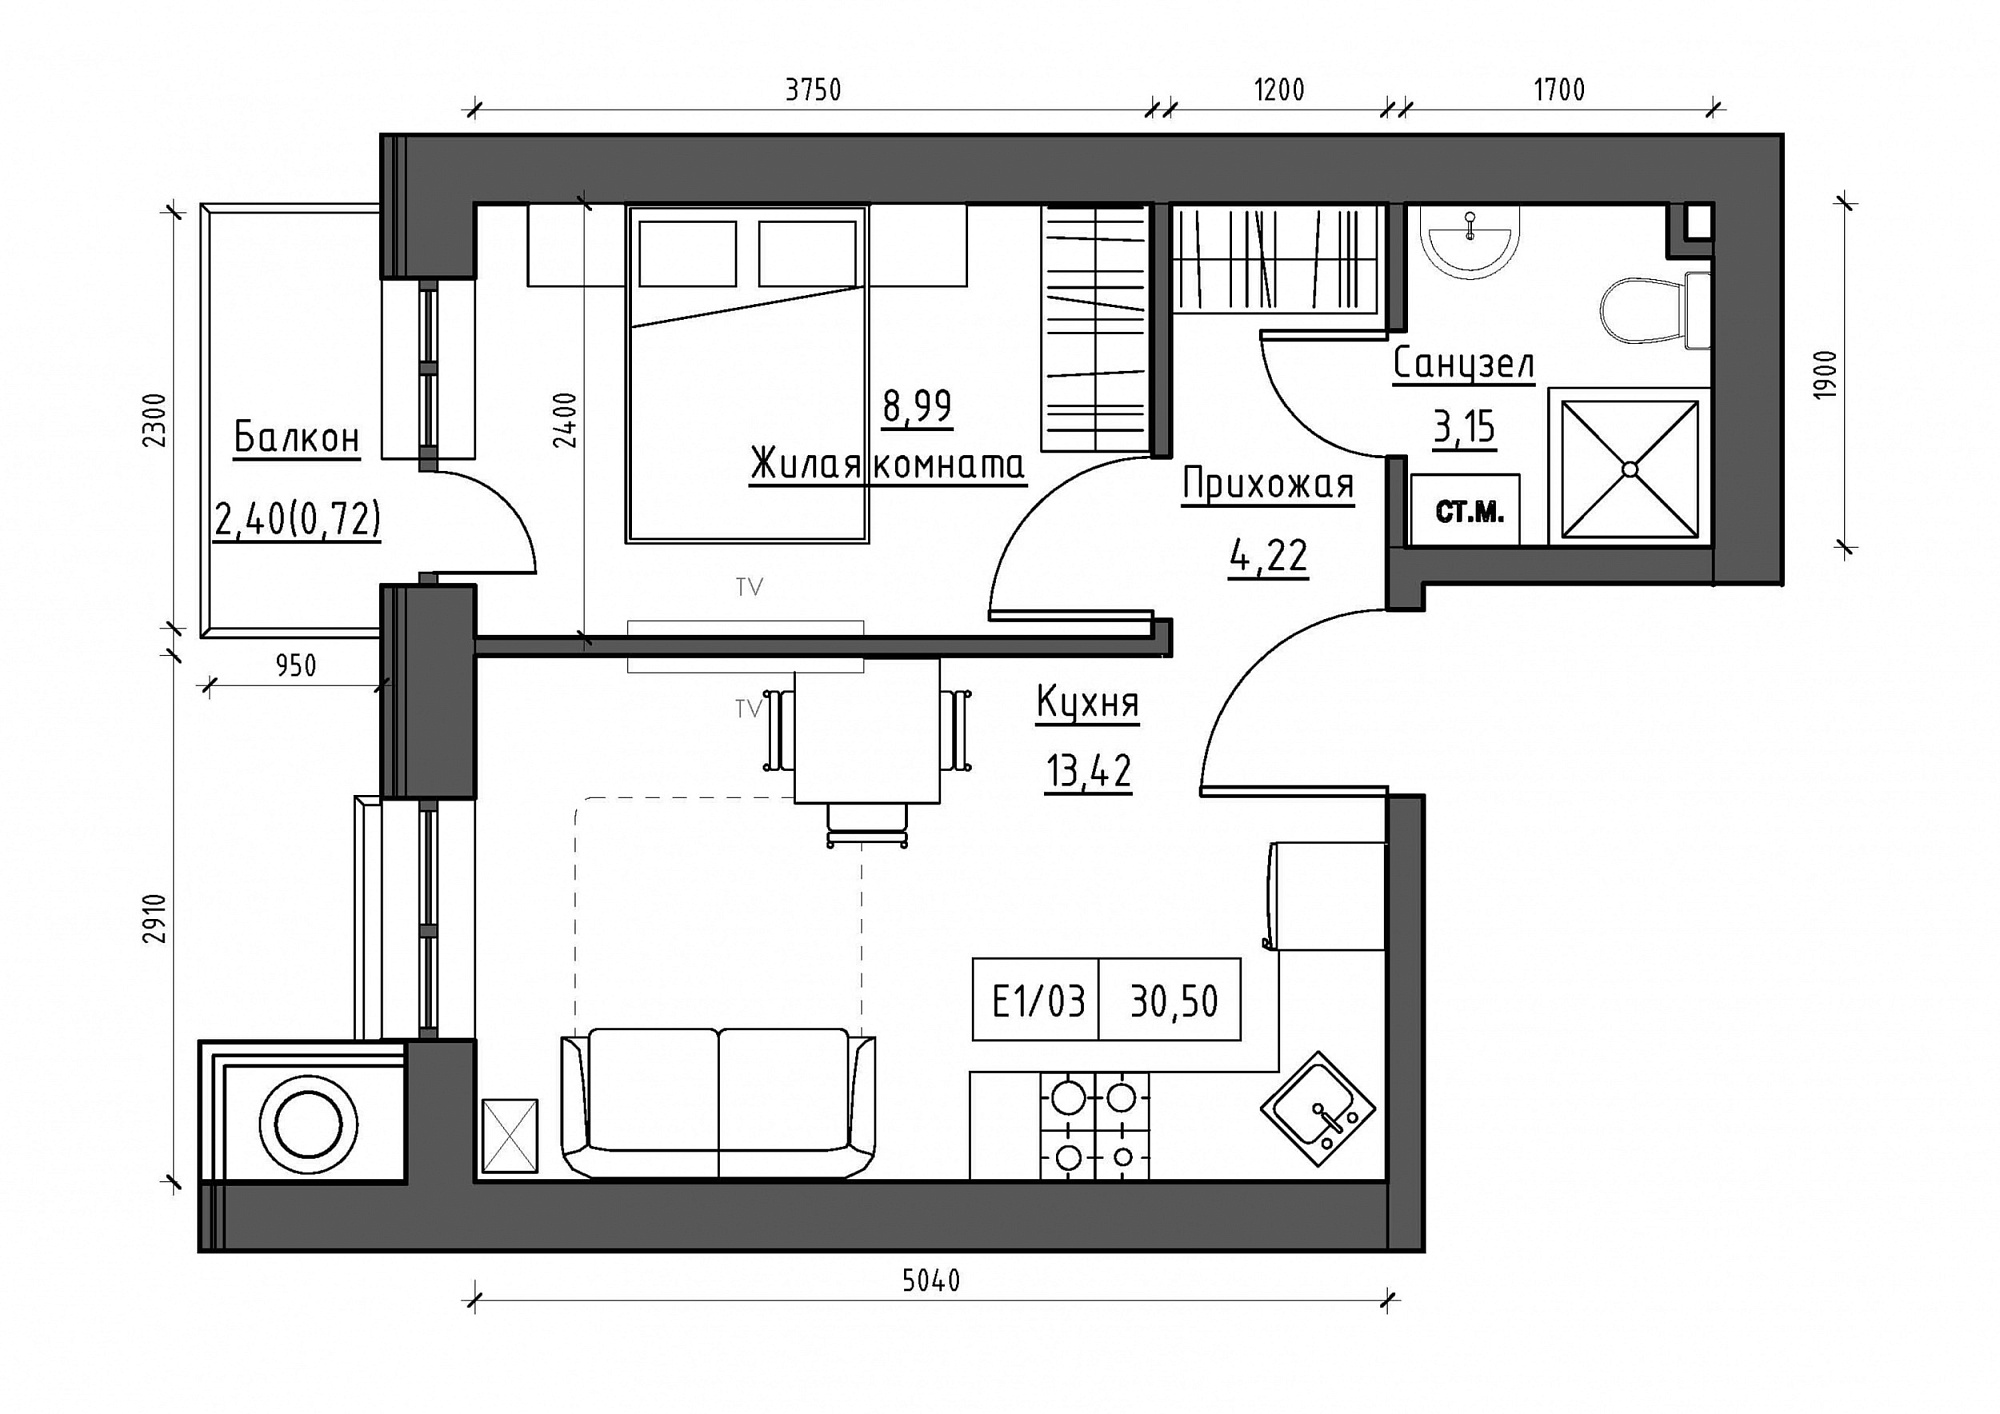 Планировка 1-к квартира площей 30.5м2, KS-011-03/0003.